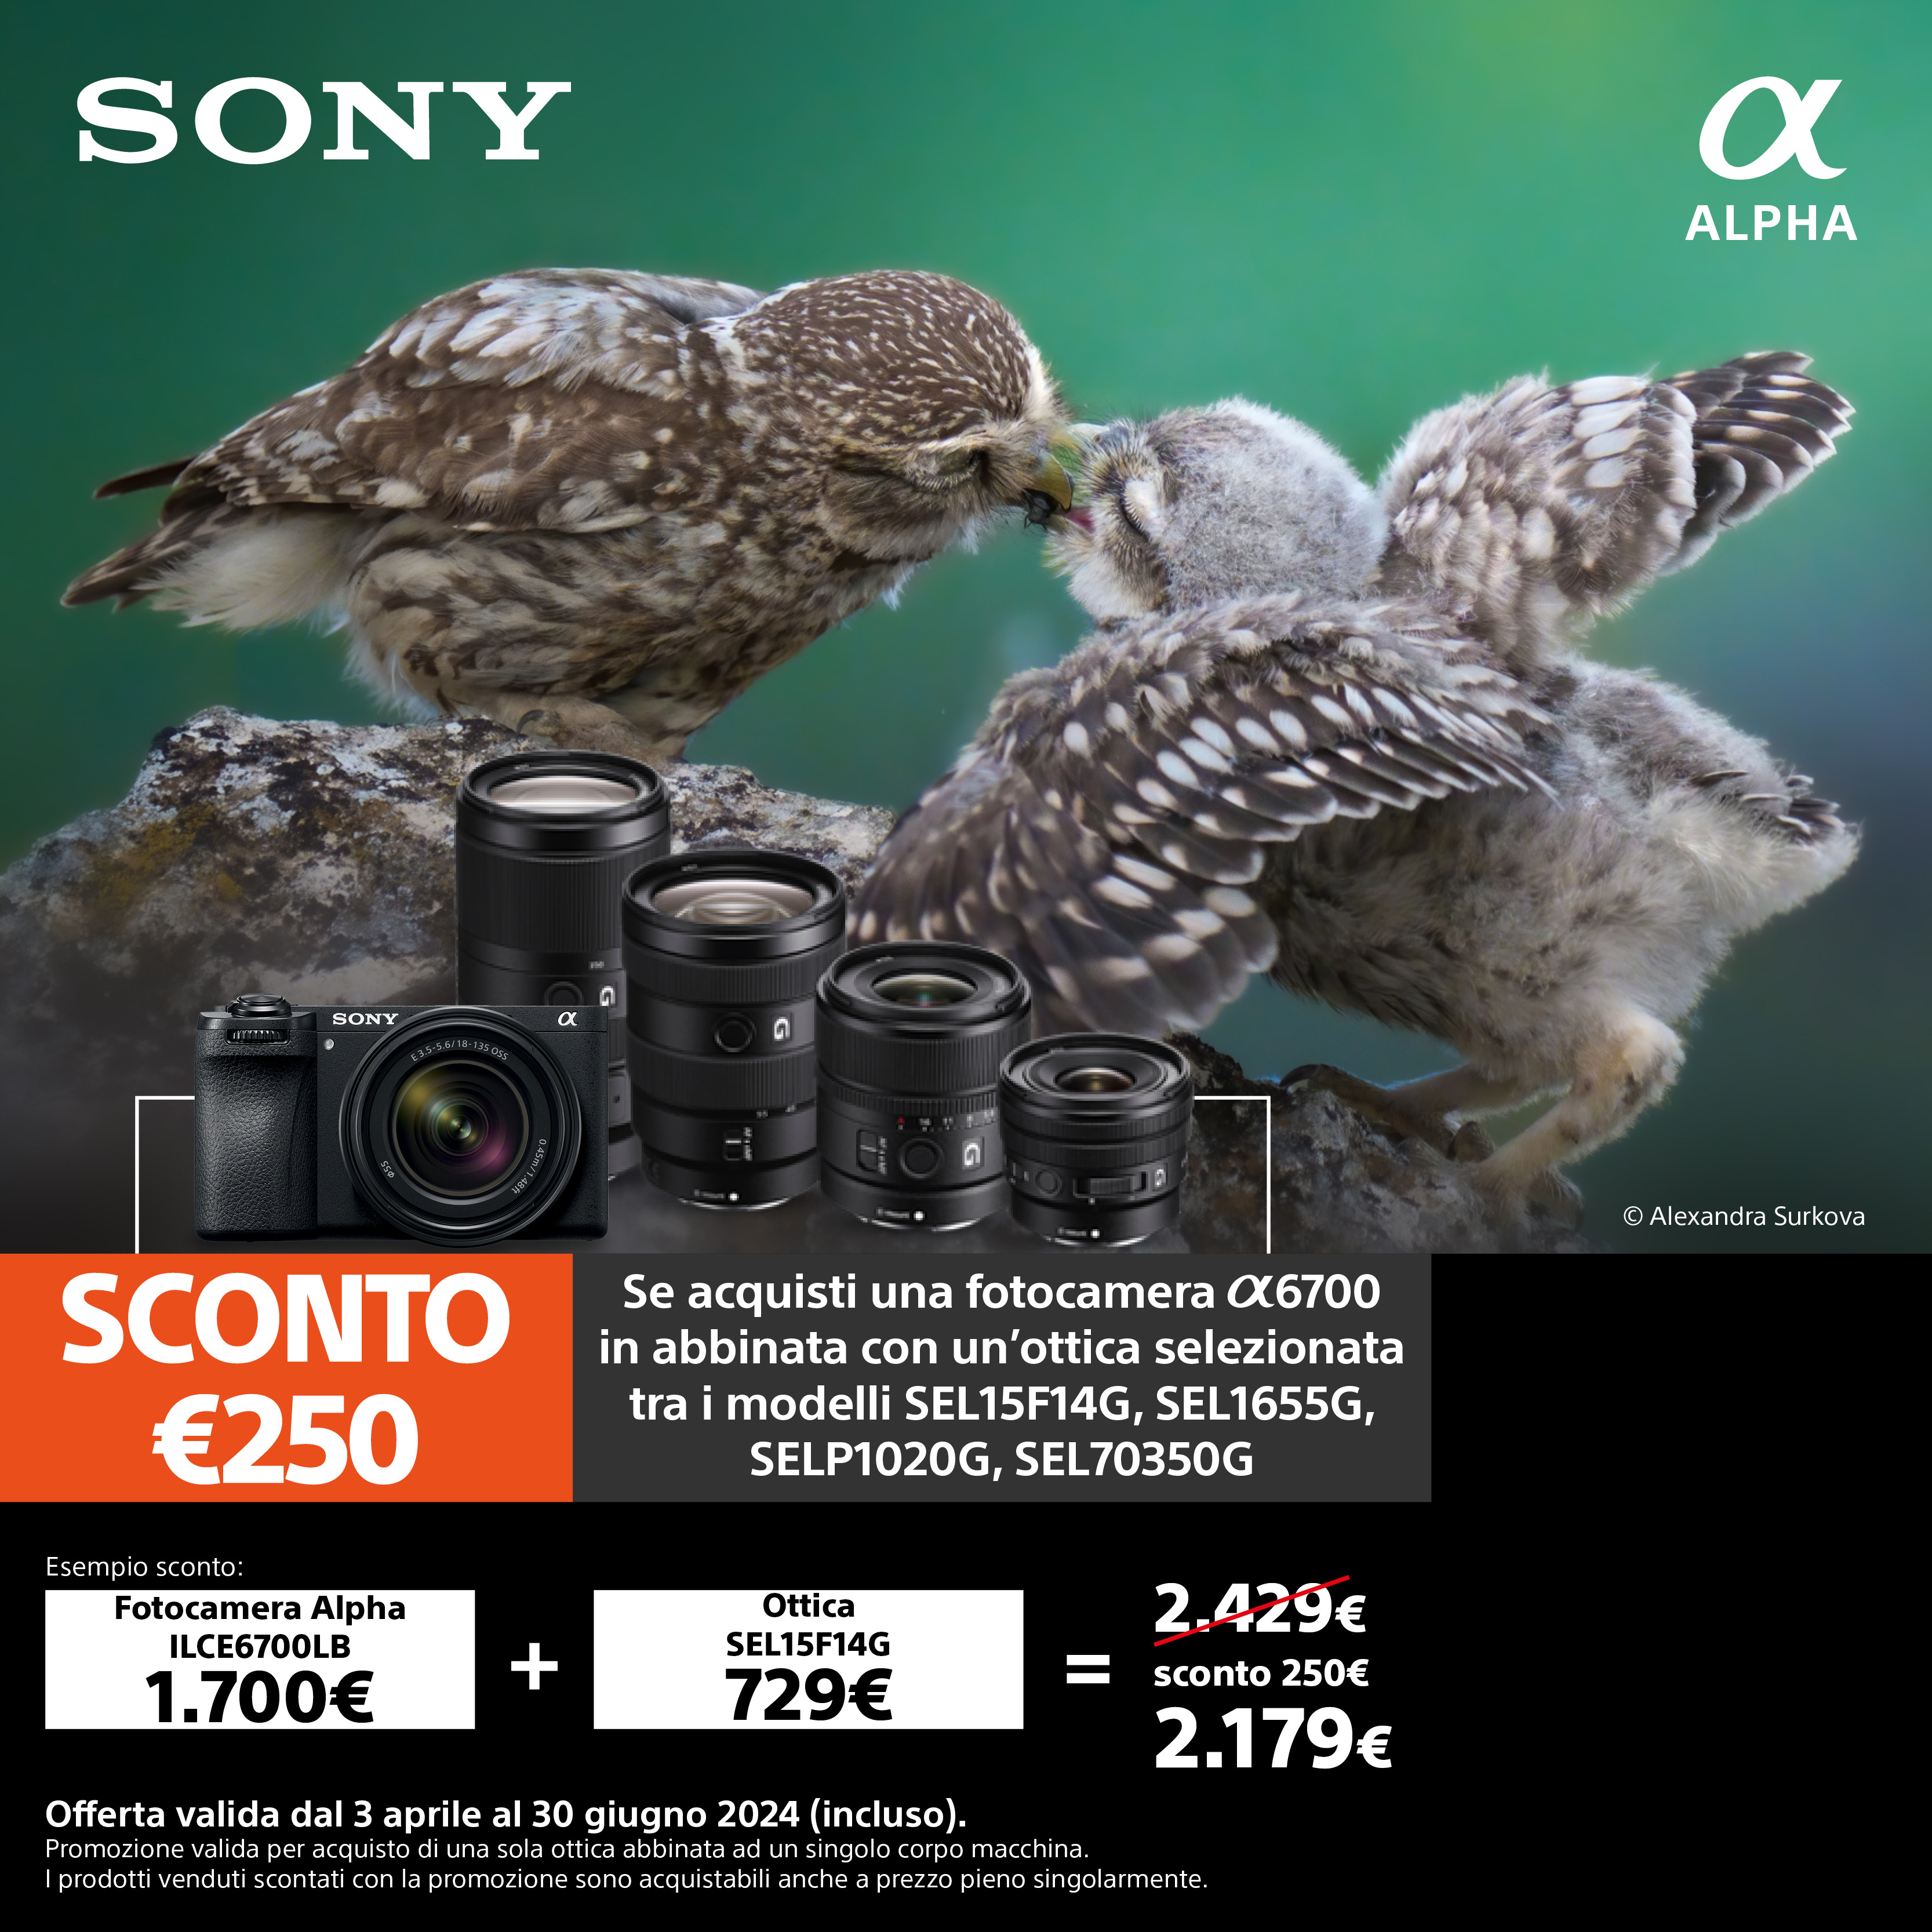 Sony Sconto Abbinata A6700